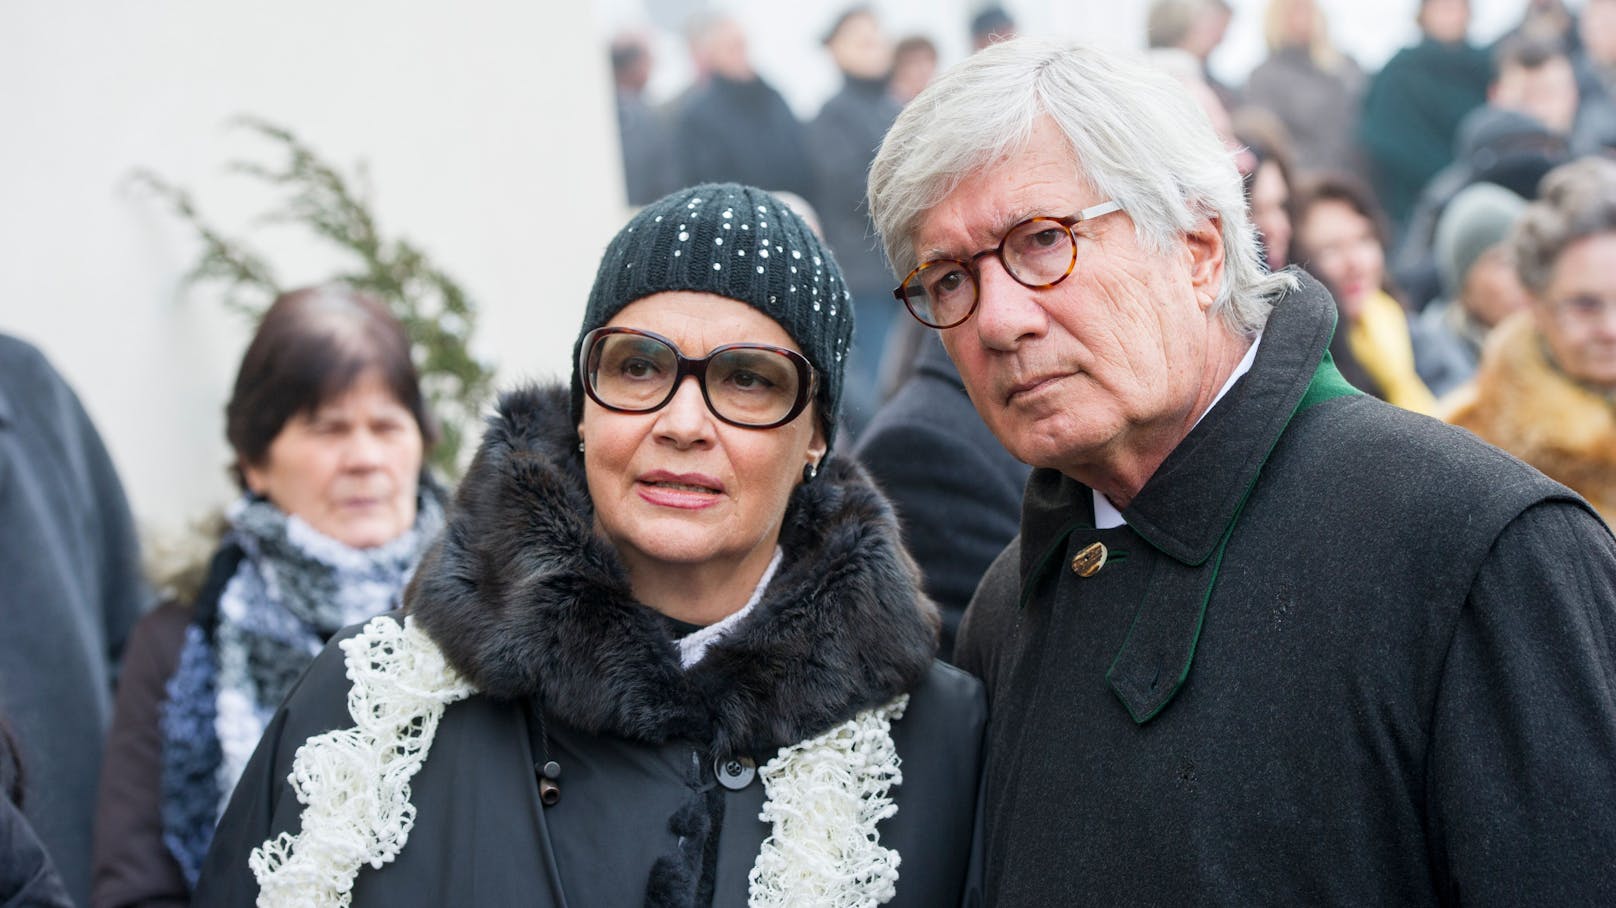 TV-Star <strong>Christian Wolff</strong> (re.) und seine Frau <strong>Marina </strong>beim Begräbnis von Maximilian Schell. Nun hat Wolff seinen eigenen Sohn Sascha unerwartet verloren.